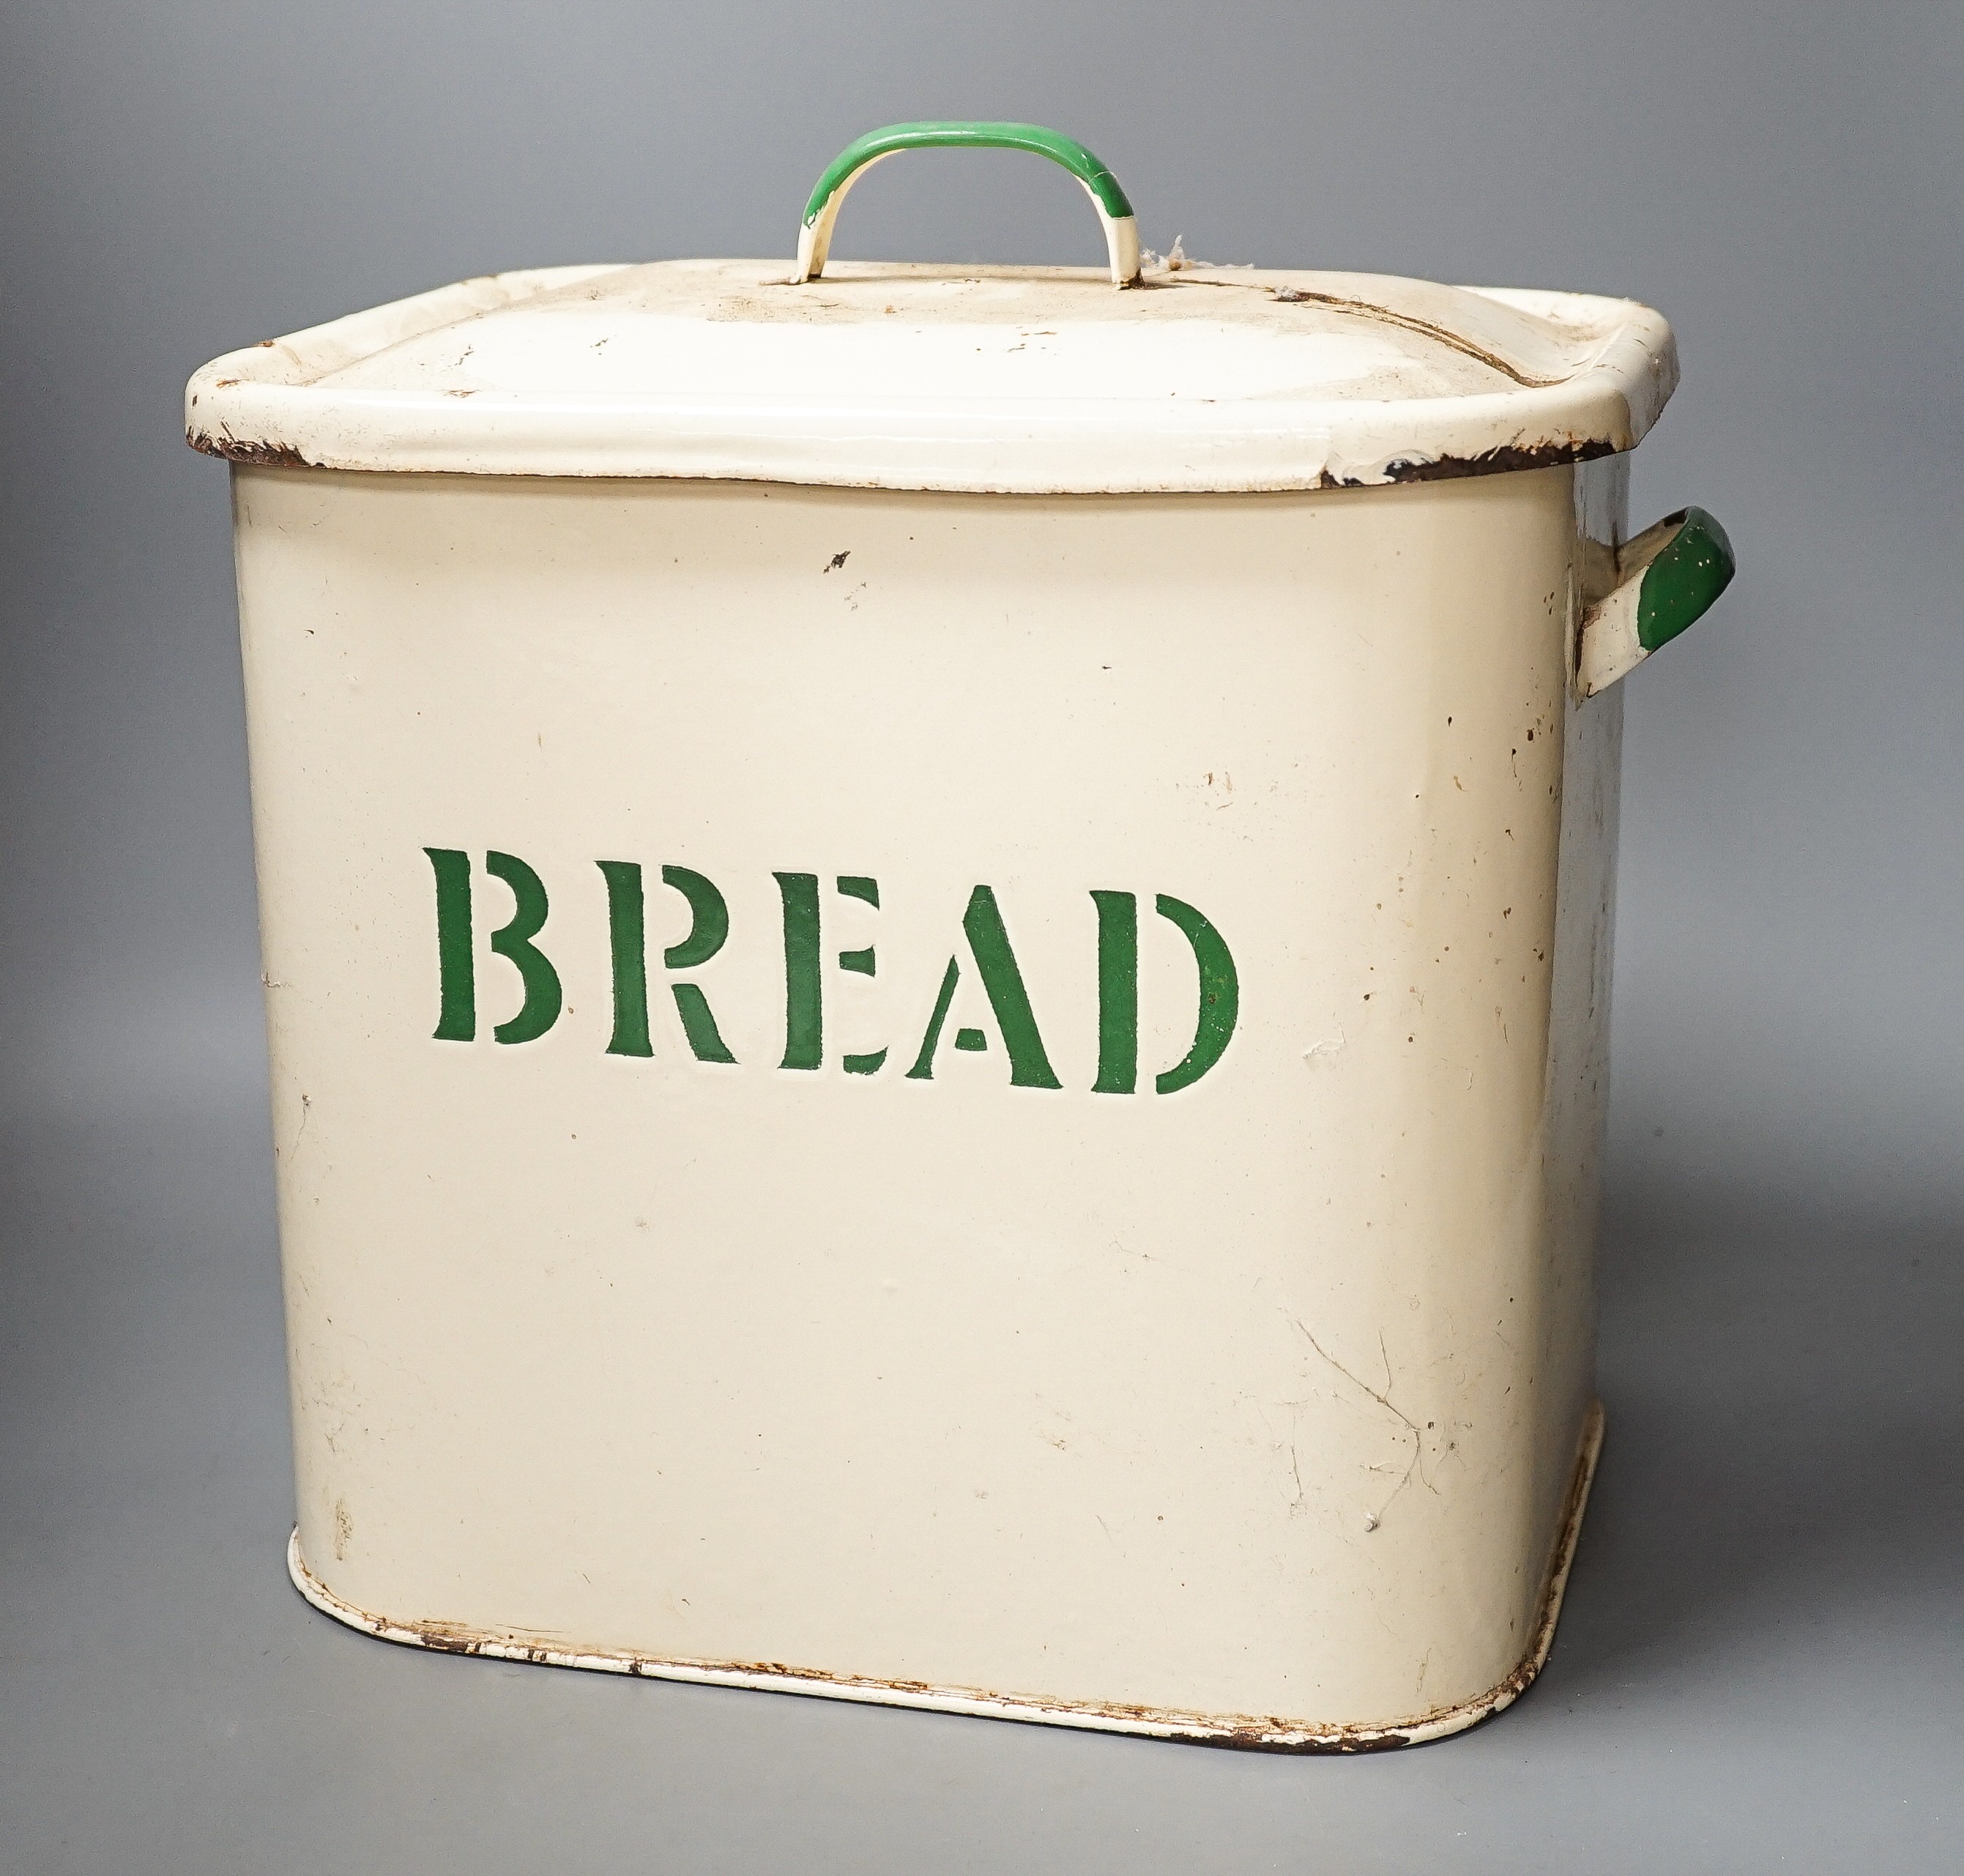 An enamelled lidded bread box